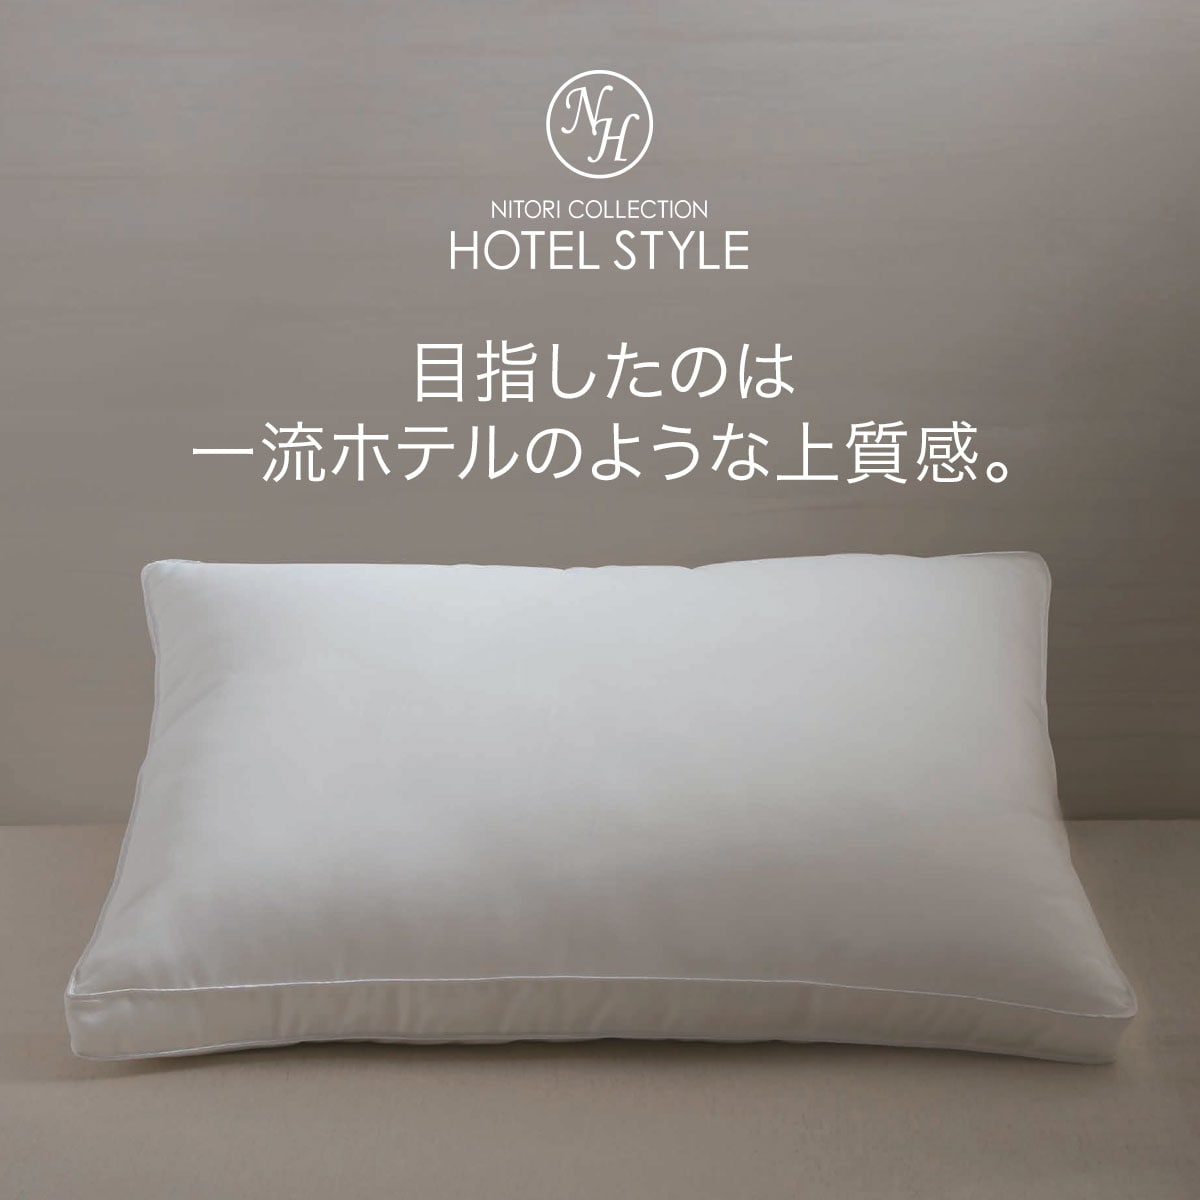 ホテルスタイル枕 大判サイズ(Nホテル3)